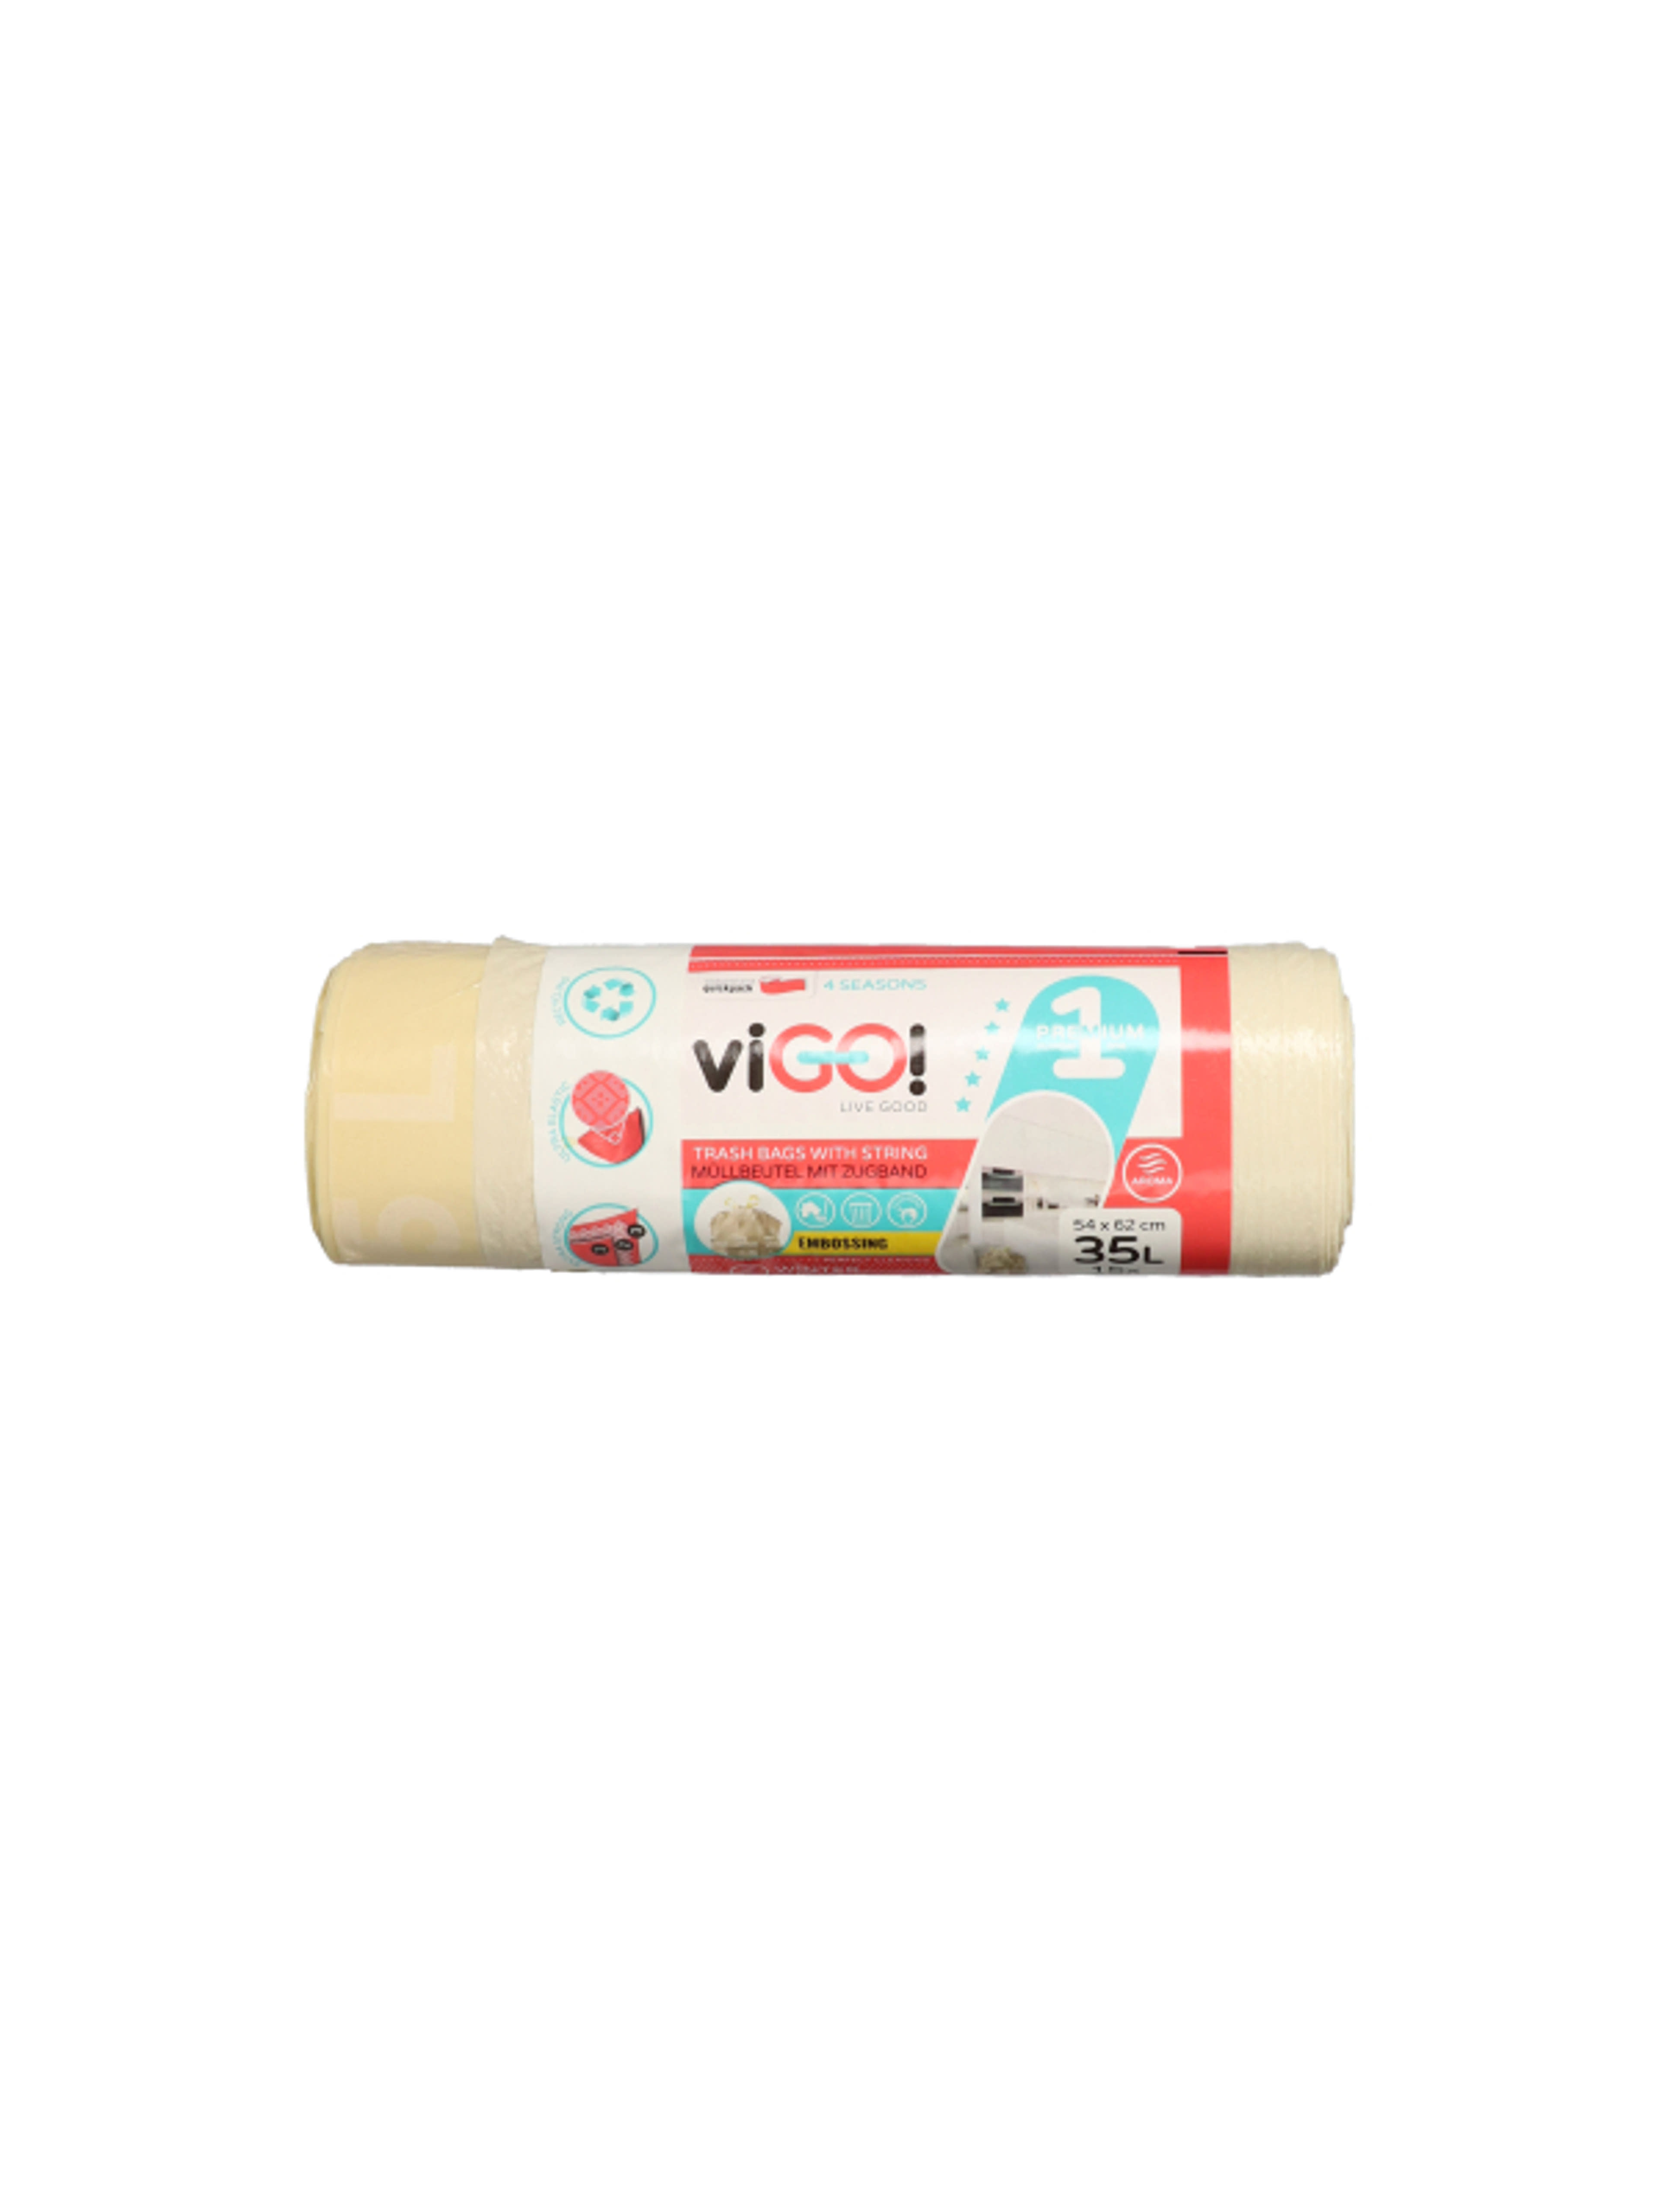 Vigo szemeteszsák, zárószalaggal, vanília illattal, 35 L - 15 db